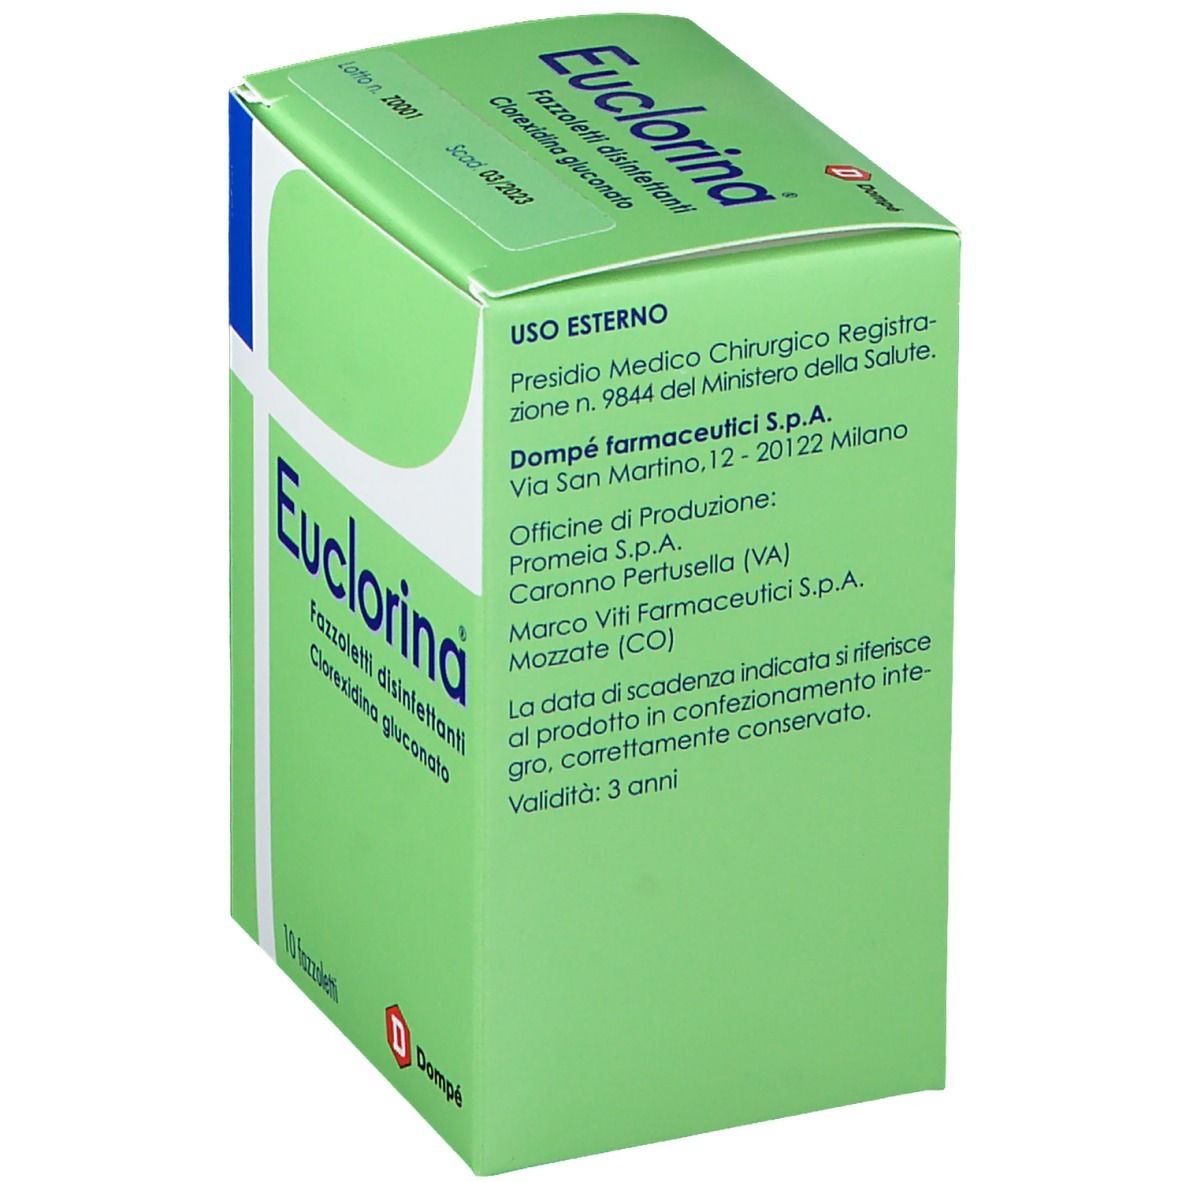 Bracco Euclorina® Fazzoletti Disinfettanti